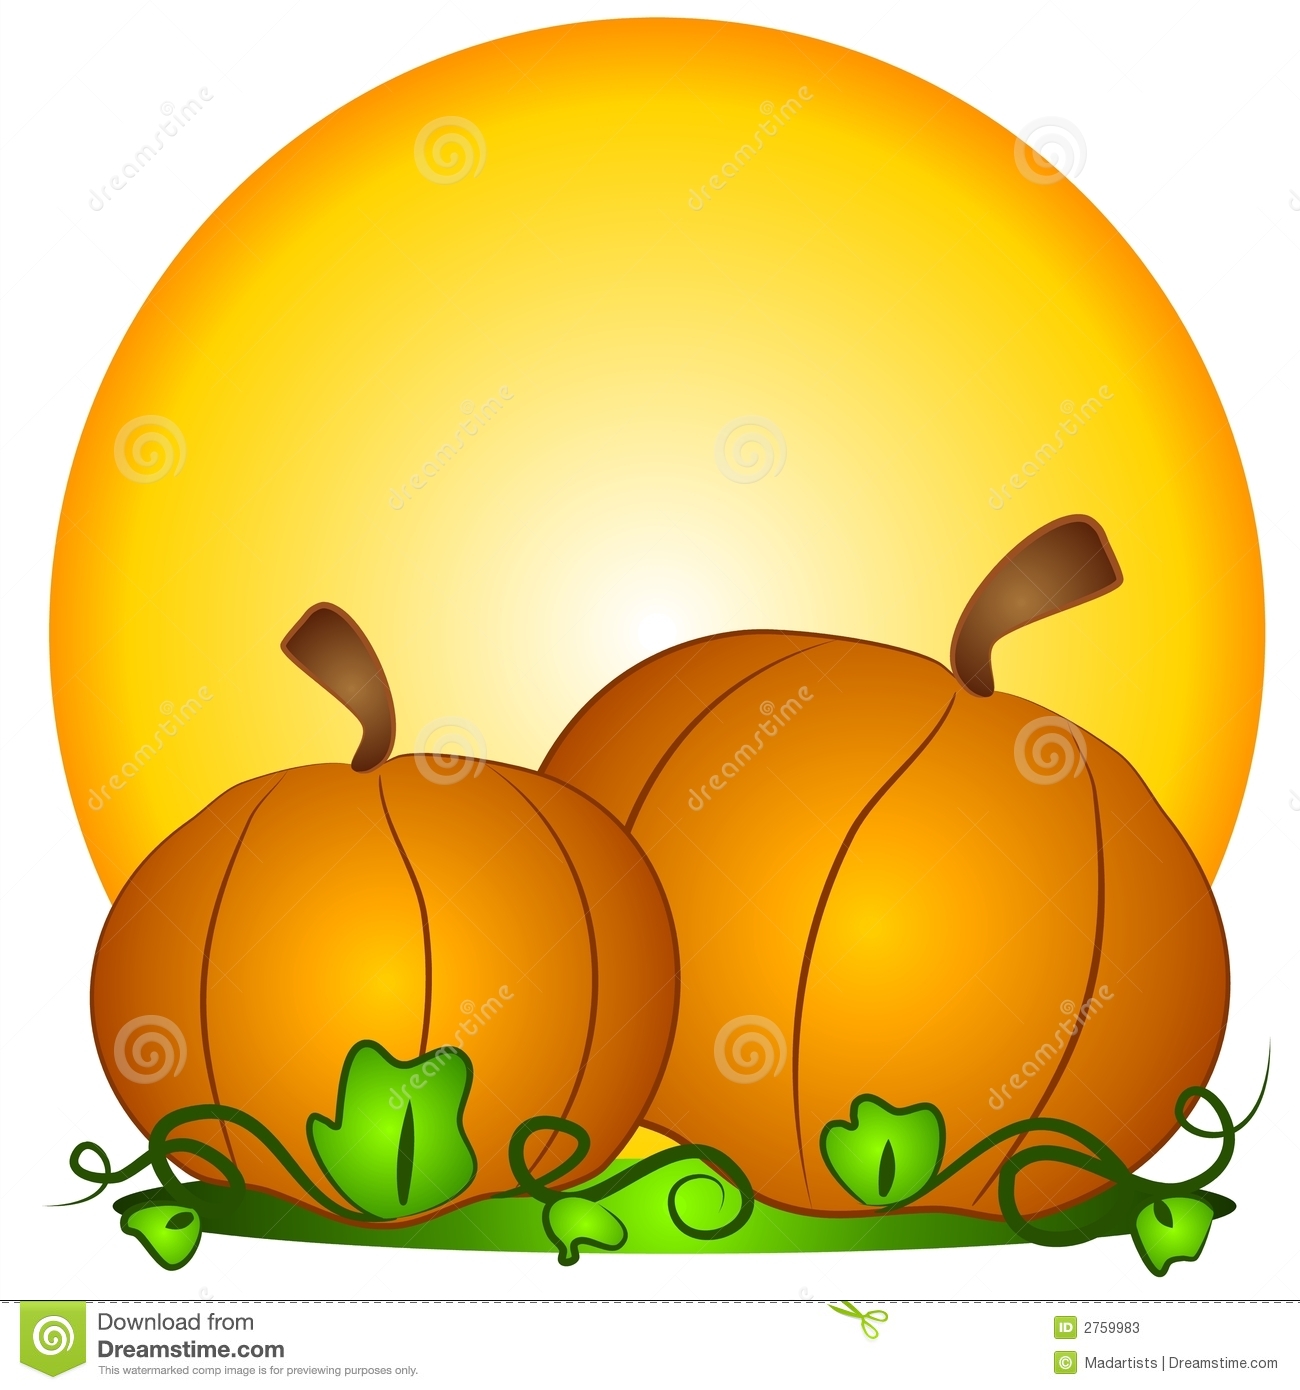 pumpkin-patch-clip-art-323795.jpg